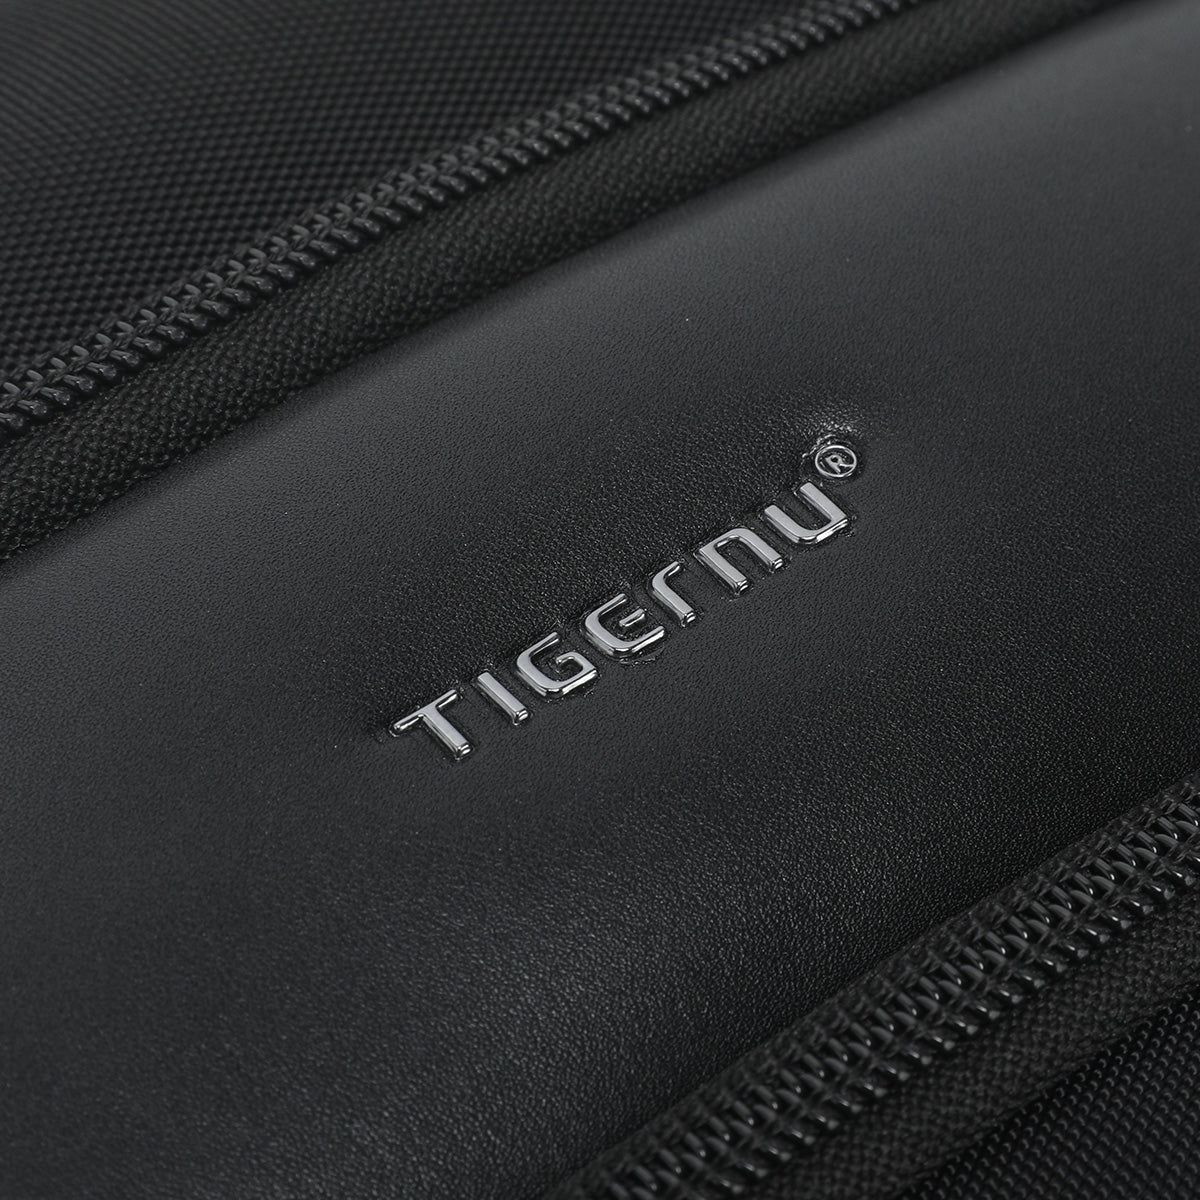 Tigernu TG-Ex Slim Expandable Laptop Backpack